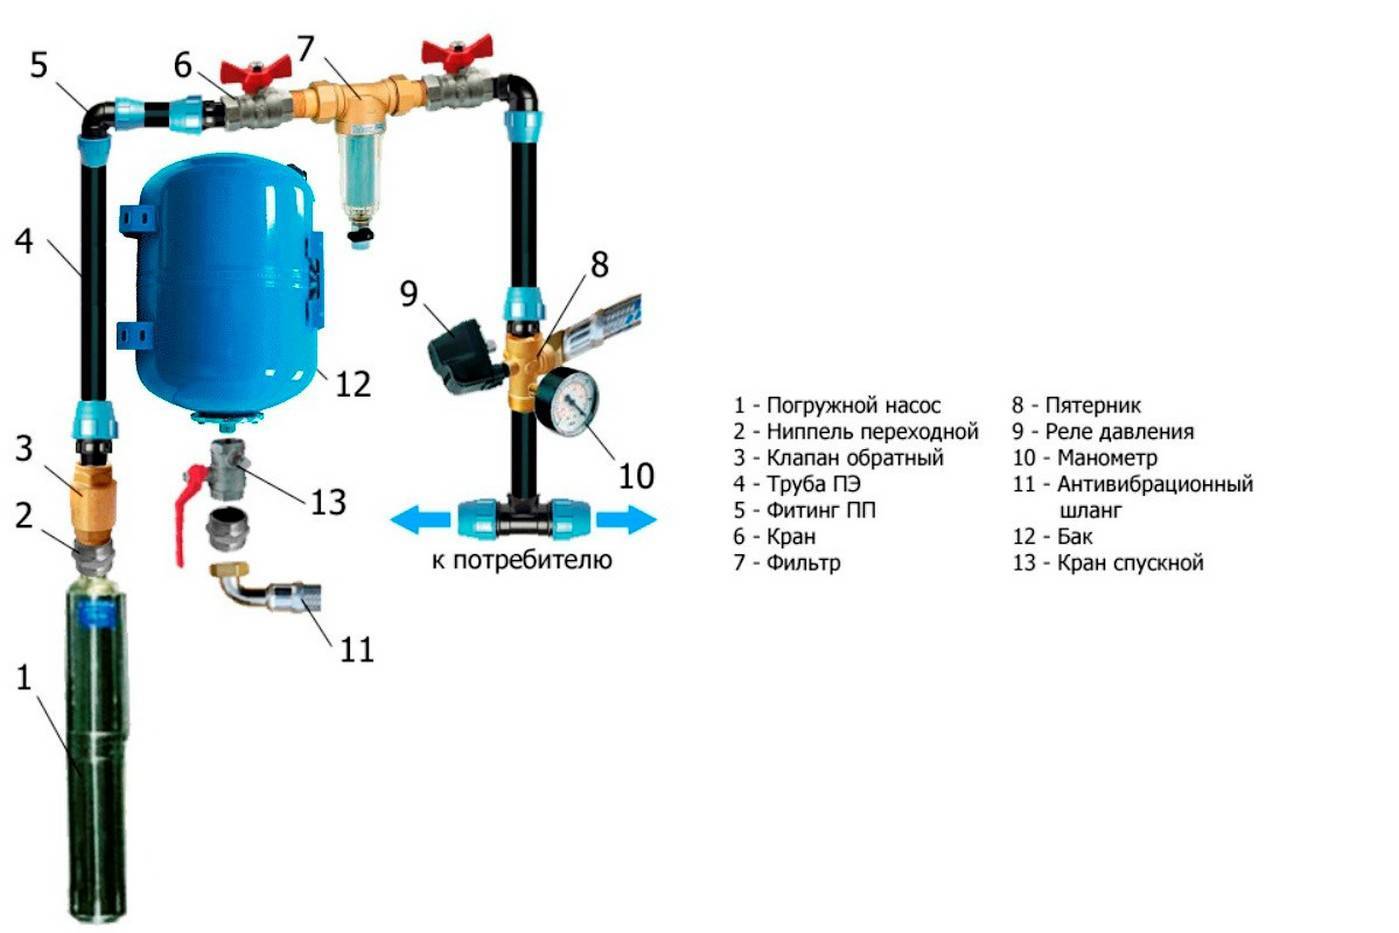 Регулировка реле давления воды для насоса: настройка, принцип работы, как отрегулировать, настроить в системе водоснабжения, схема подключения реле минимального давления, как подключить датчик